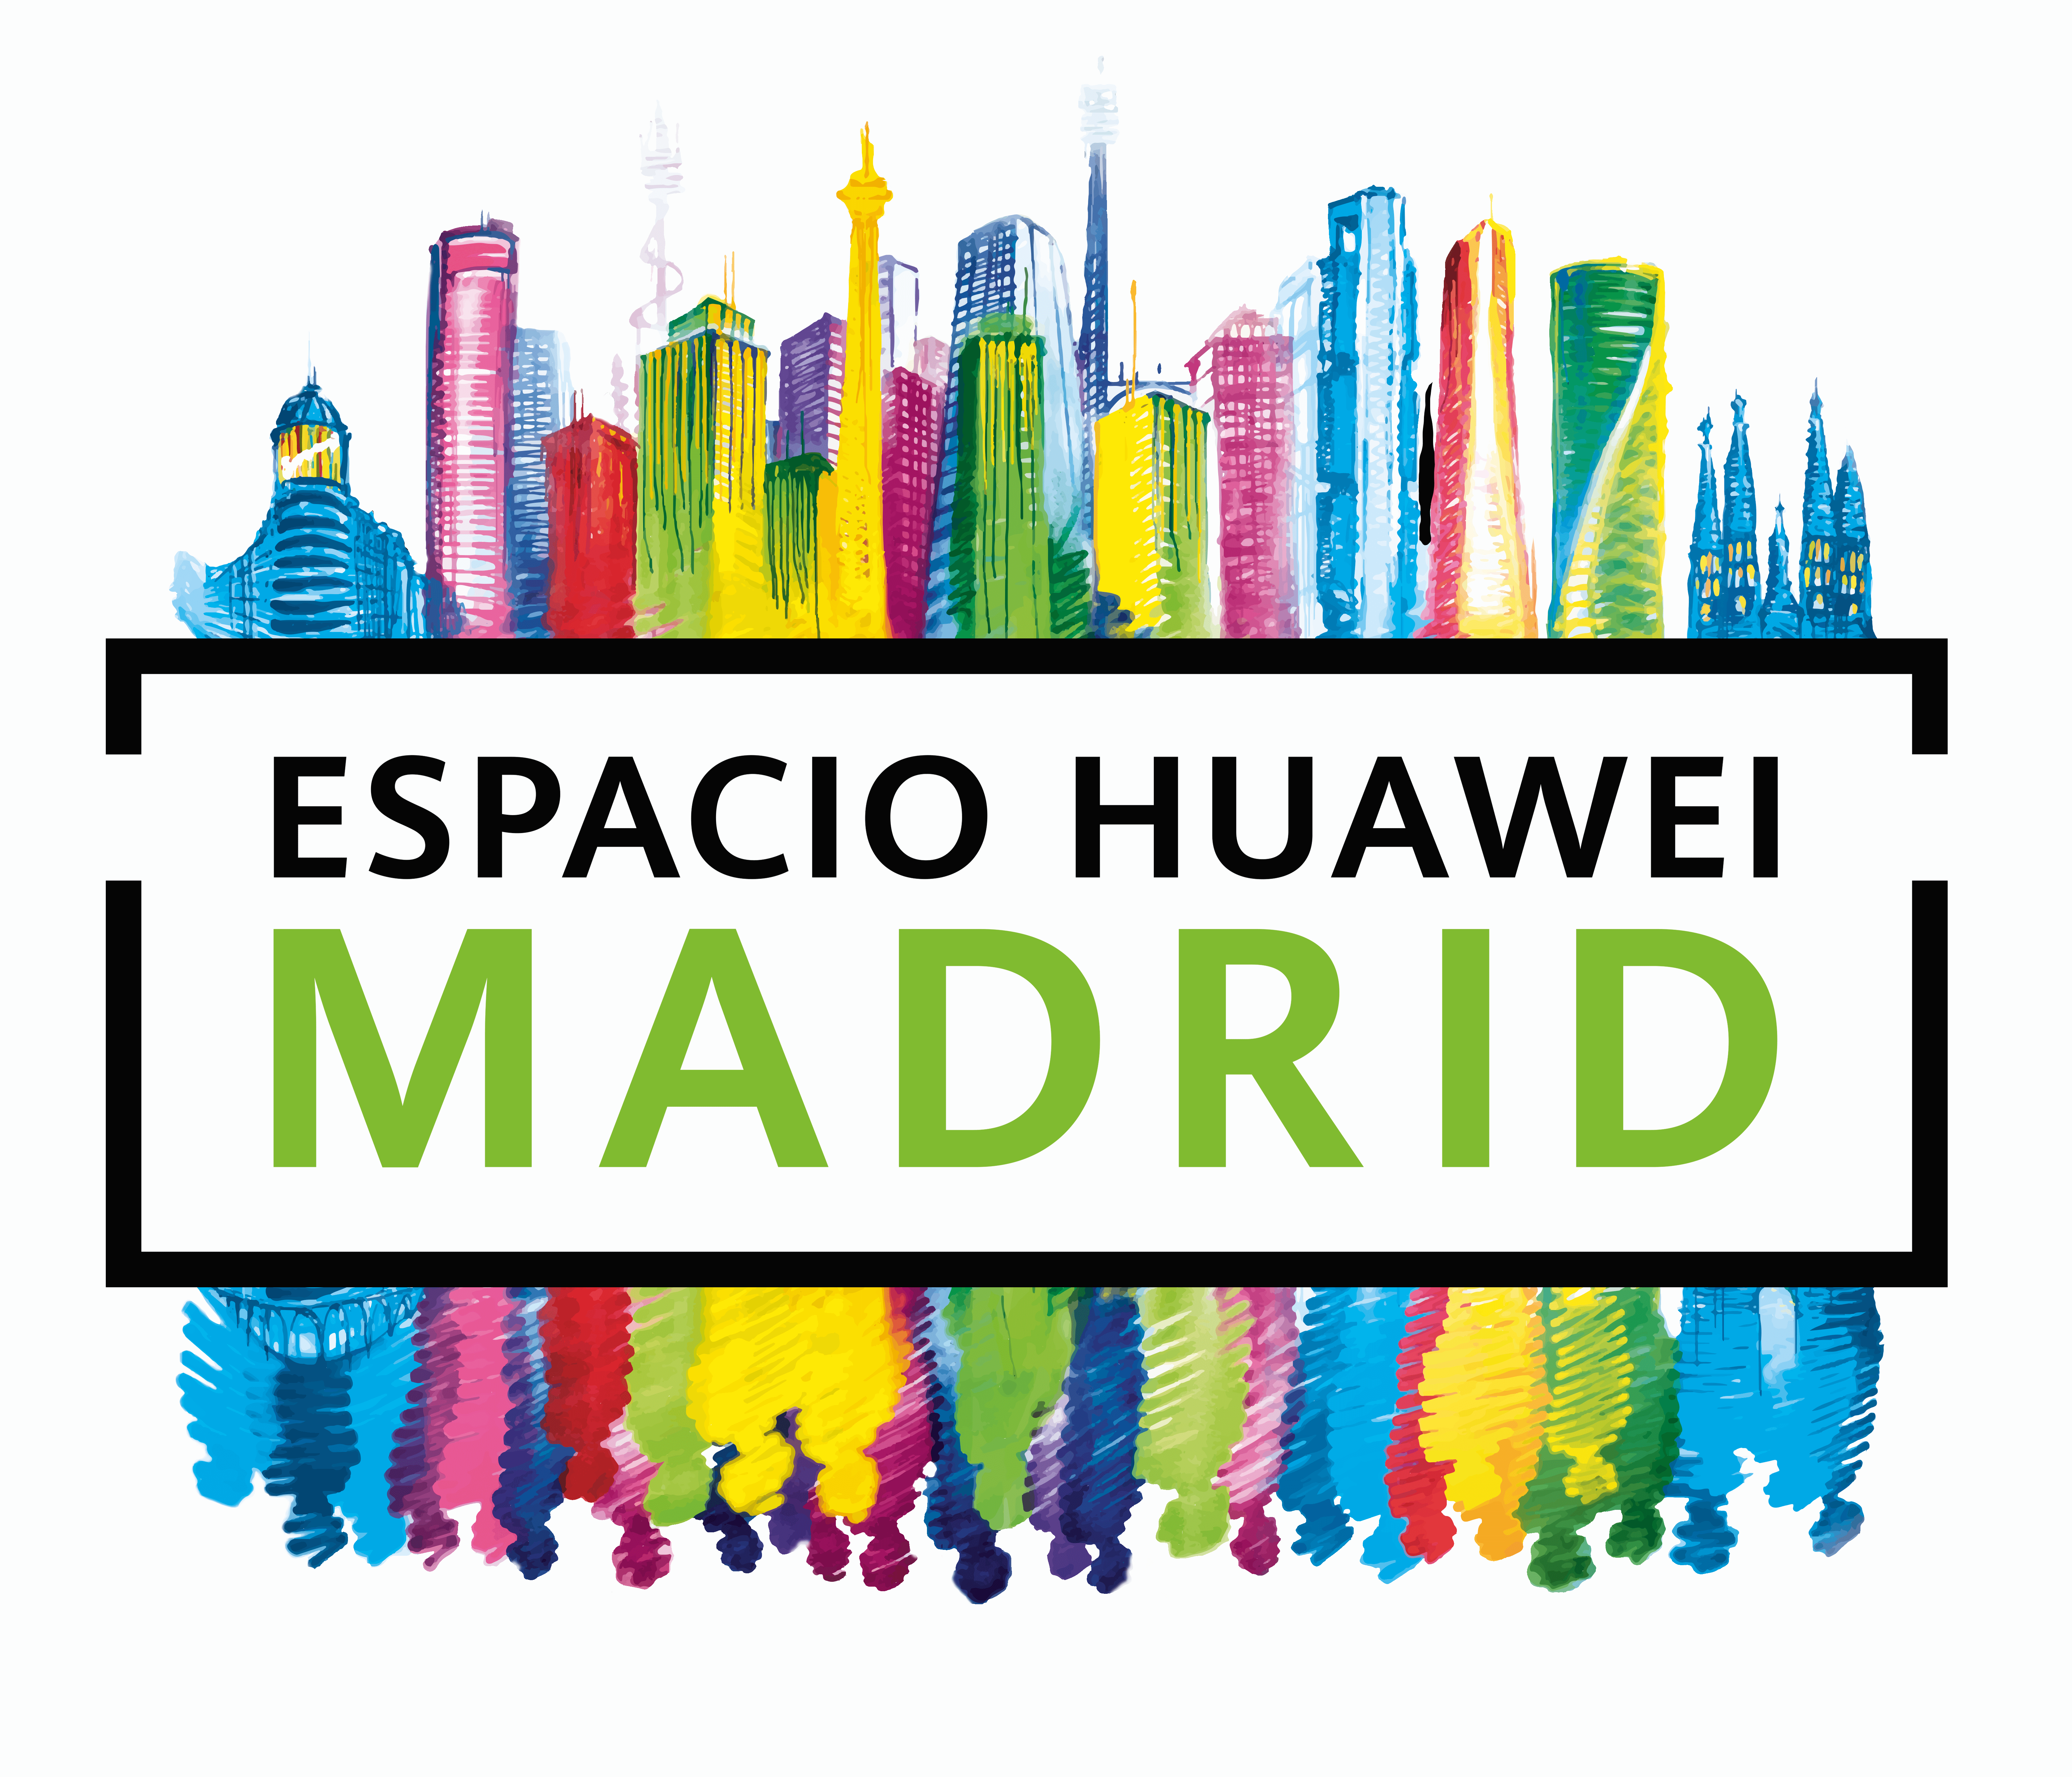 El mayor Espacio Huawei del mundo abre sus puertas en el corazón de Madrid